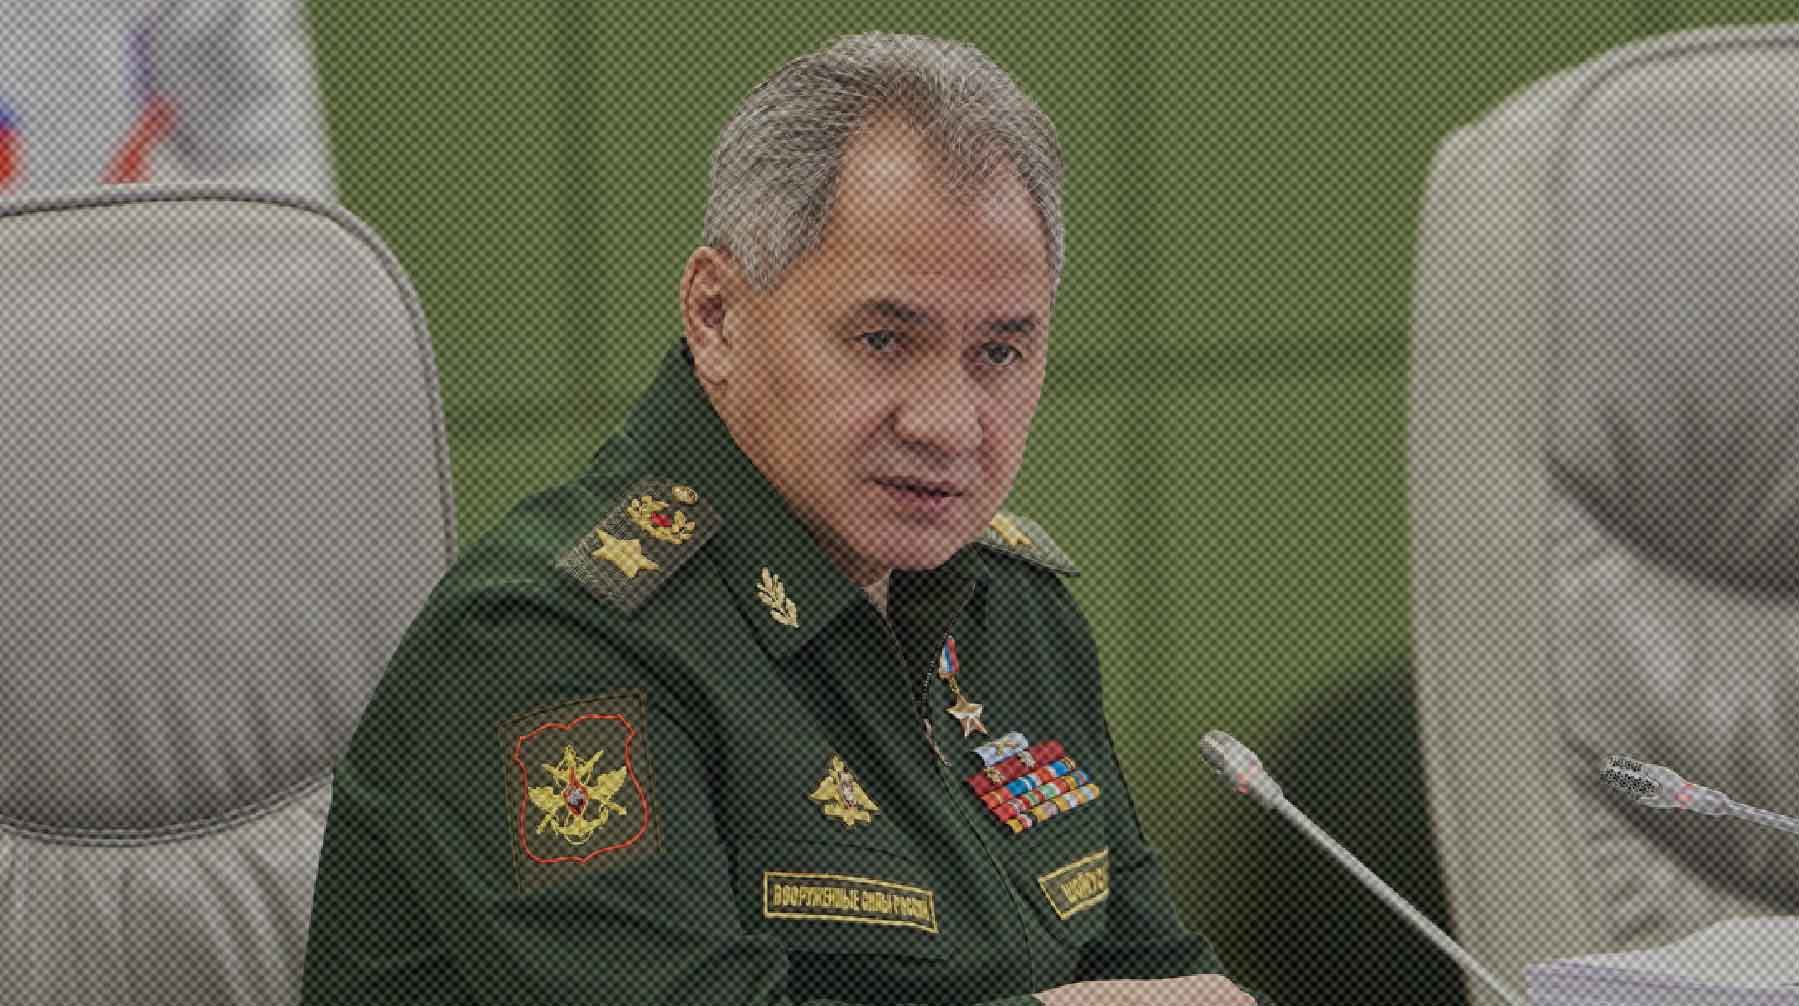 Dailystorm - Министр обороны России Шойгу заявил, что армия потеряла на Украине 5937 солдат и офицеров